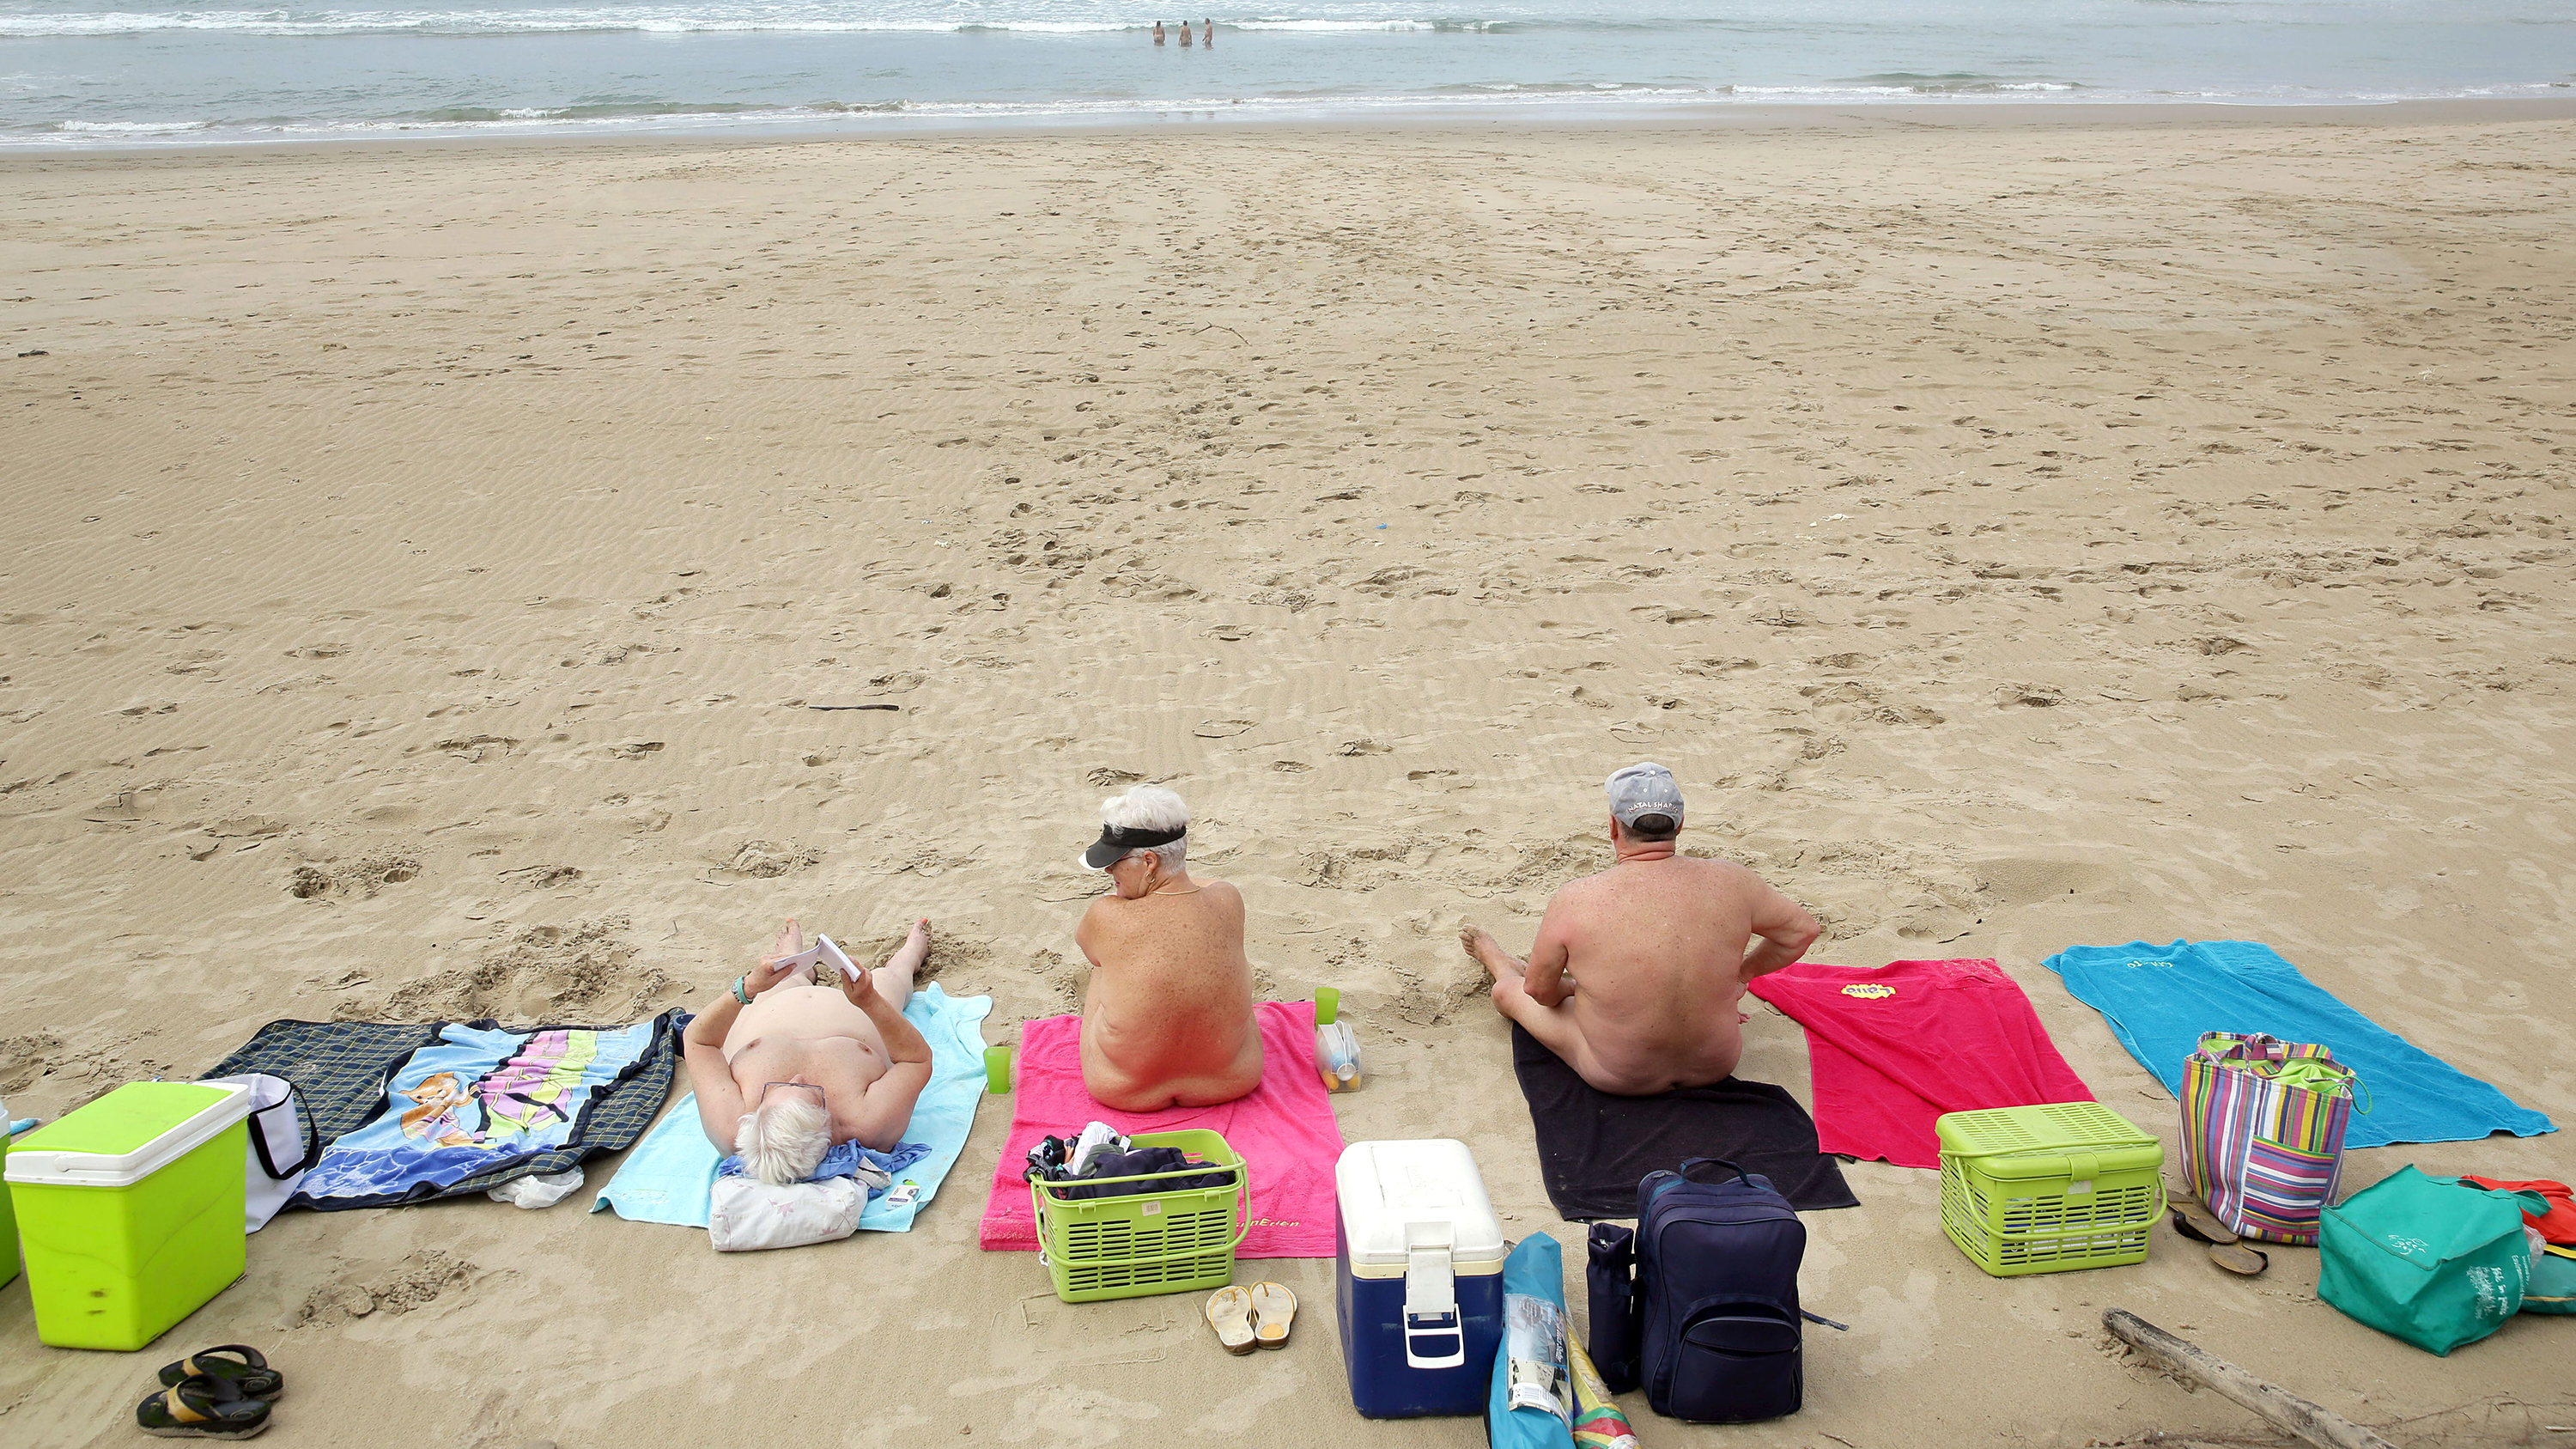 Public topless beach girls